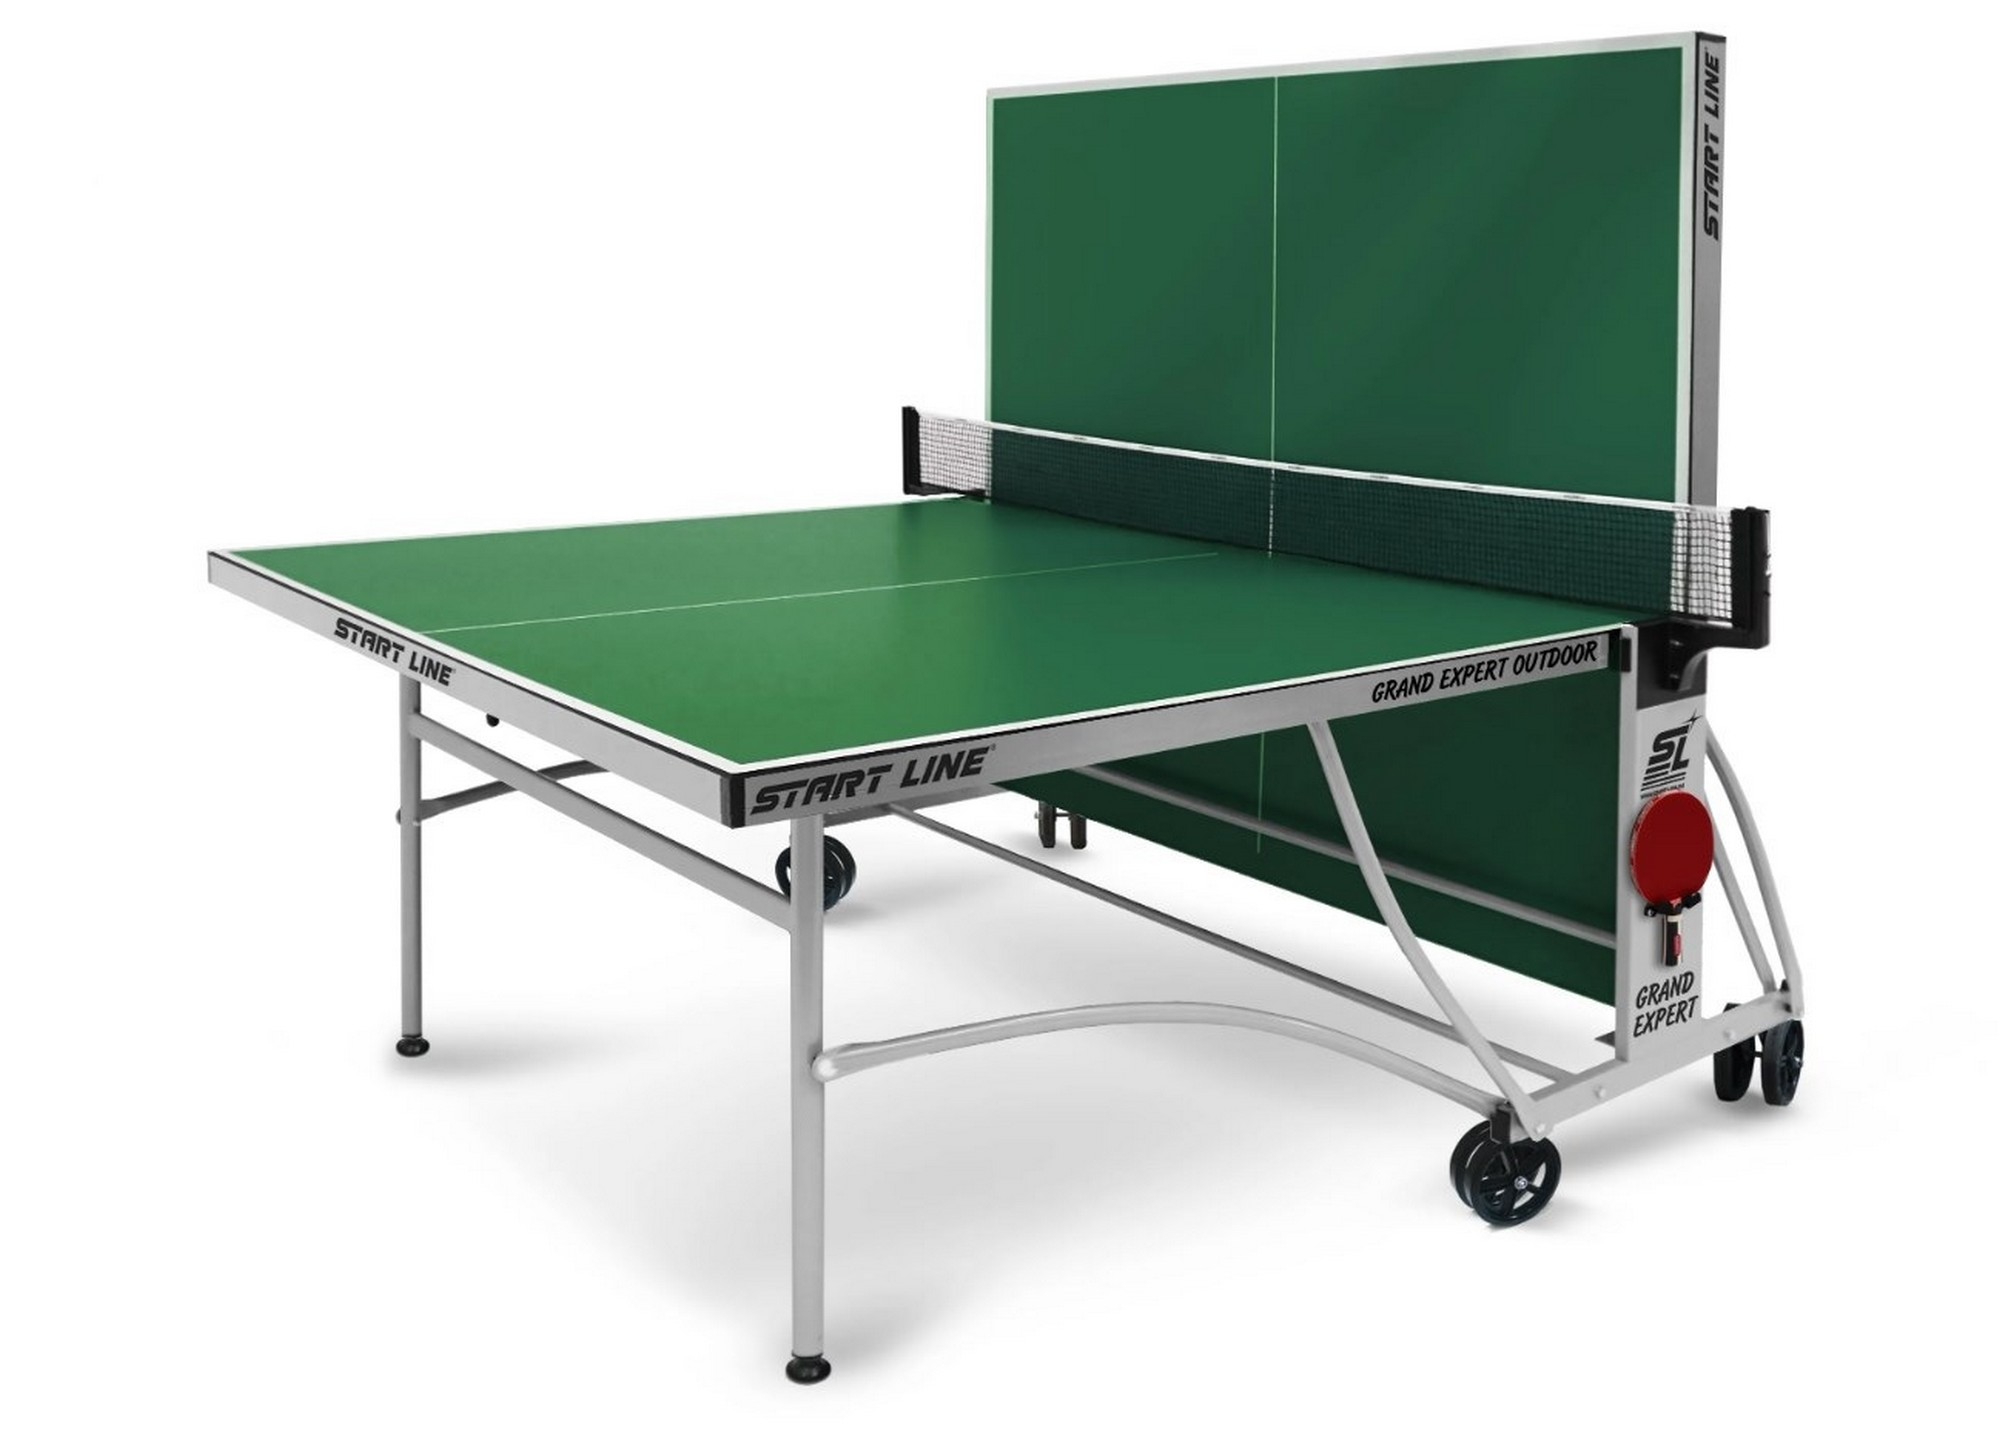 Теннисный стол Start Line Grand Expert Outdoor 4 6044-8 Зеленый 2000_1435